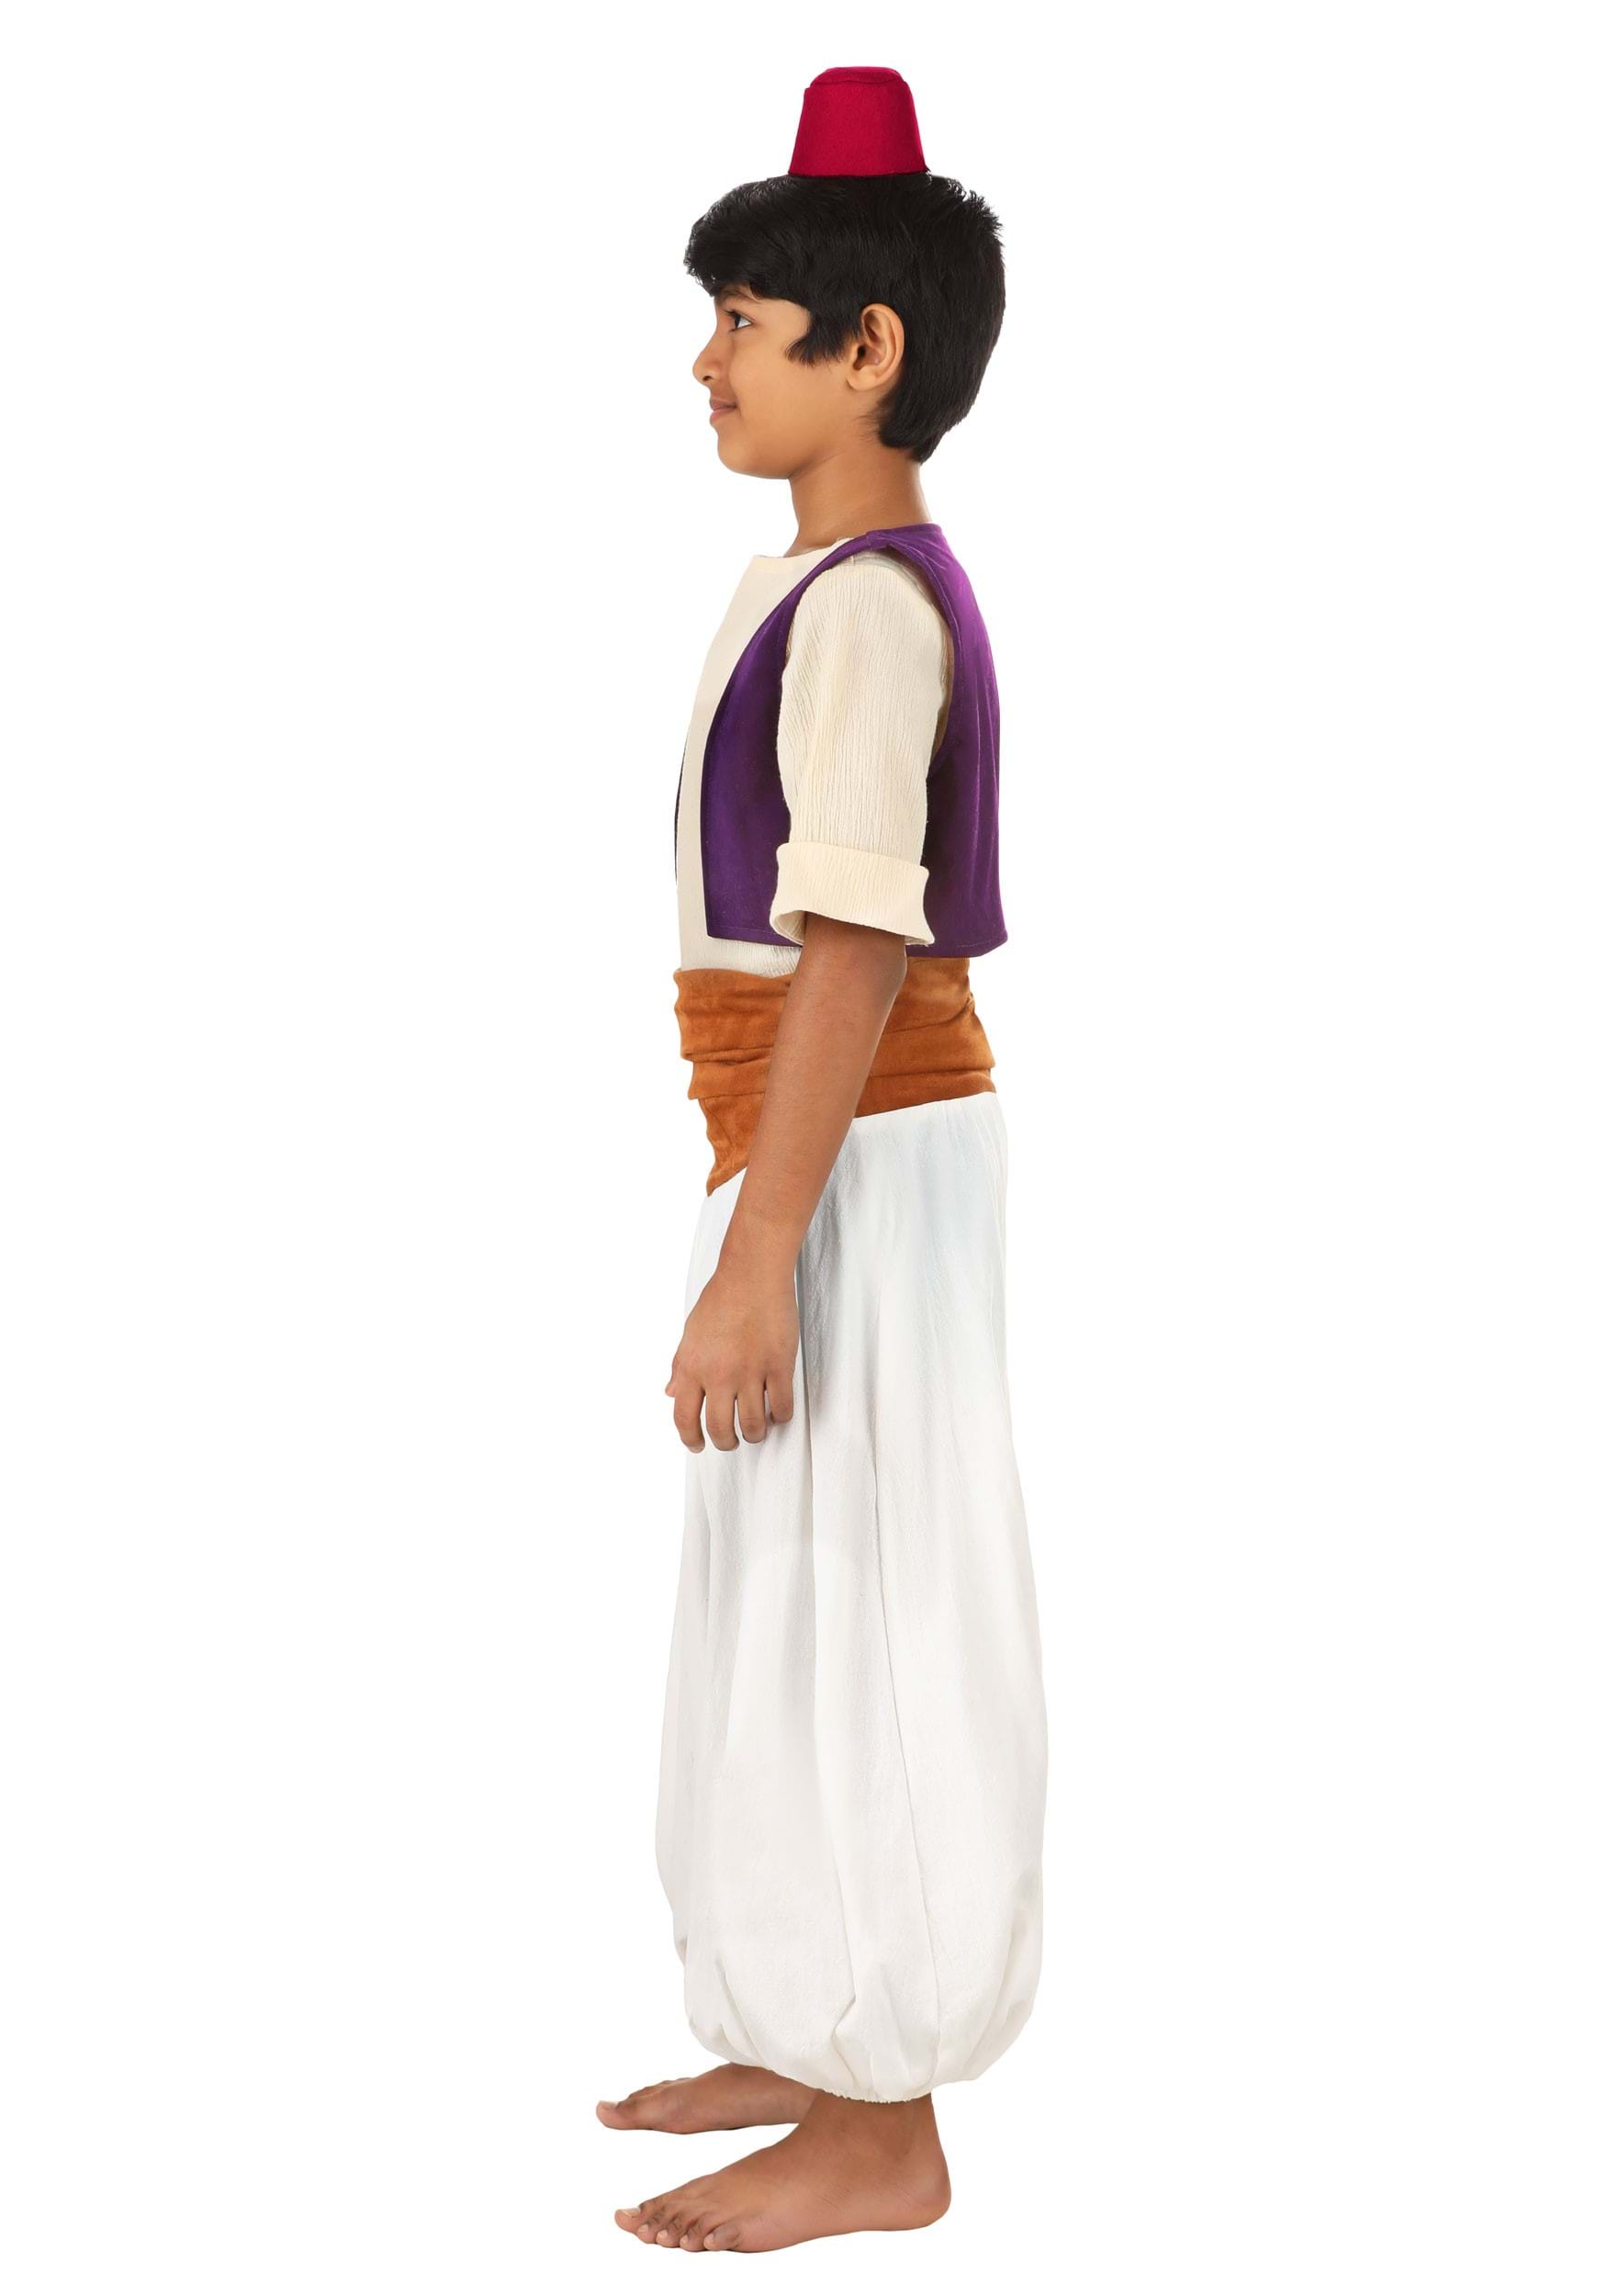 Kid's Disney Aladdin Deluxe Costume